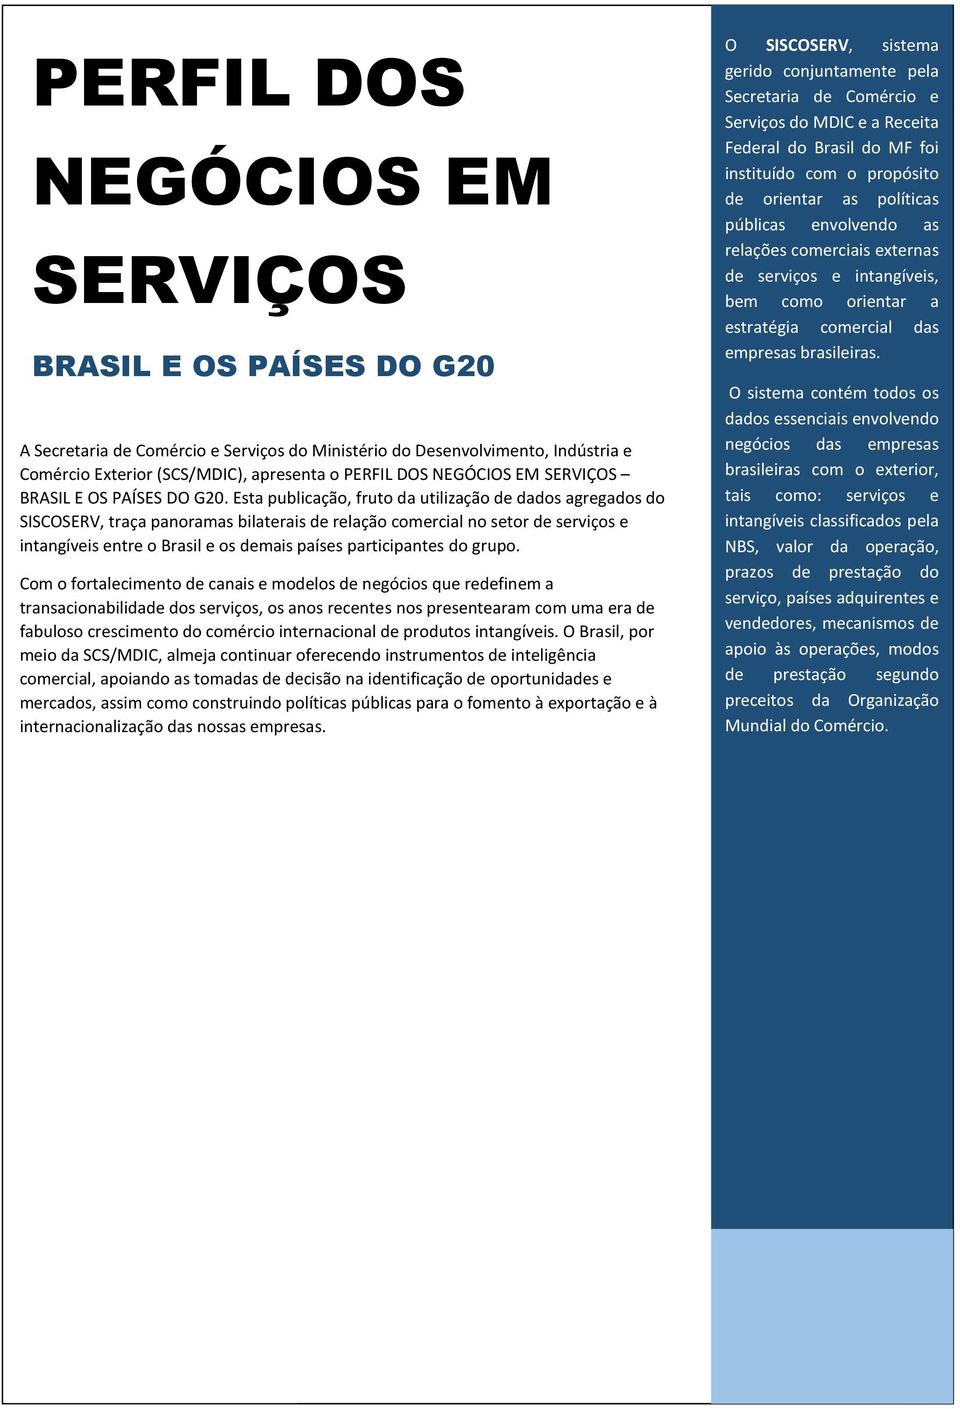 Esta publicação, fruto da utilização de dados agregados do SISCOSERV, traça panoramas bilaterais de relação comercial no setor de serviços e intangíveis entre o Brasil e os demais países